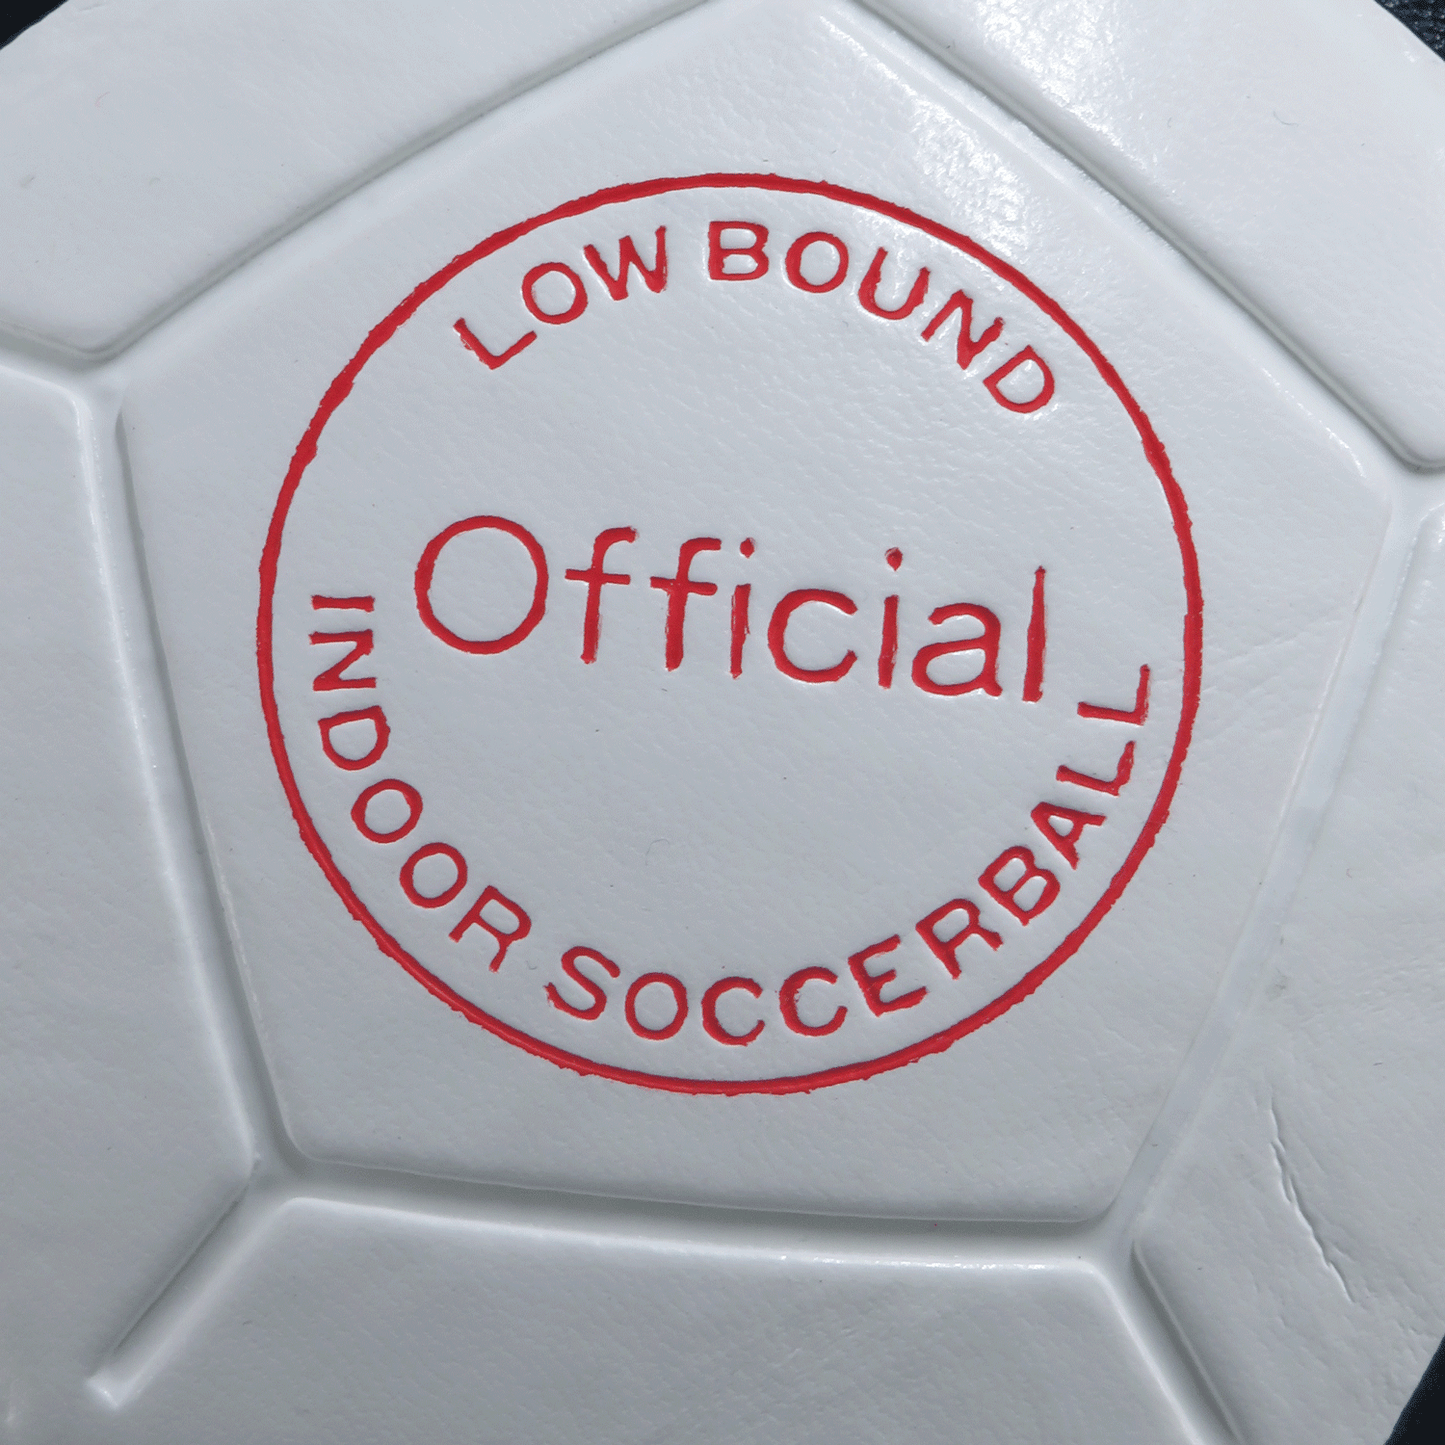 Balón de Fútbol Sala Mikasa  SWL62 - Laminado